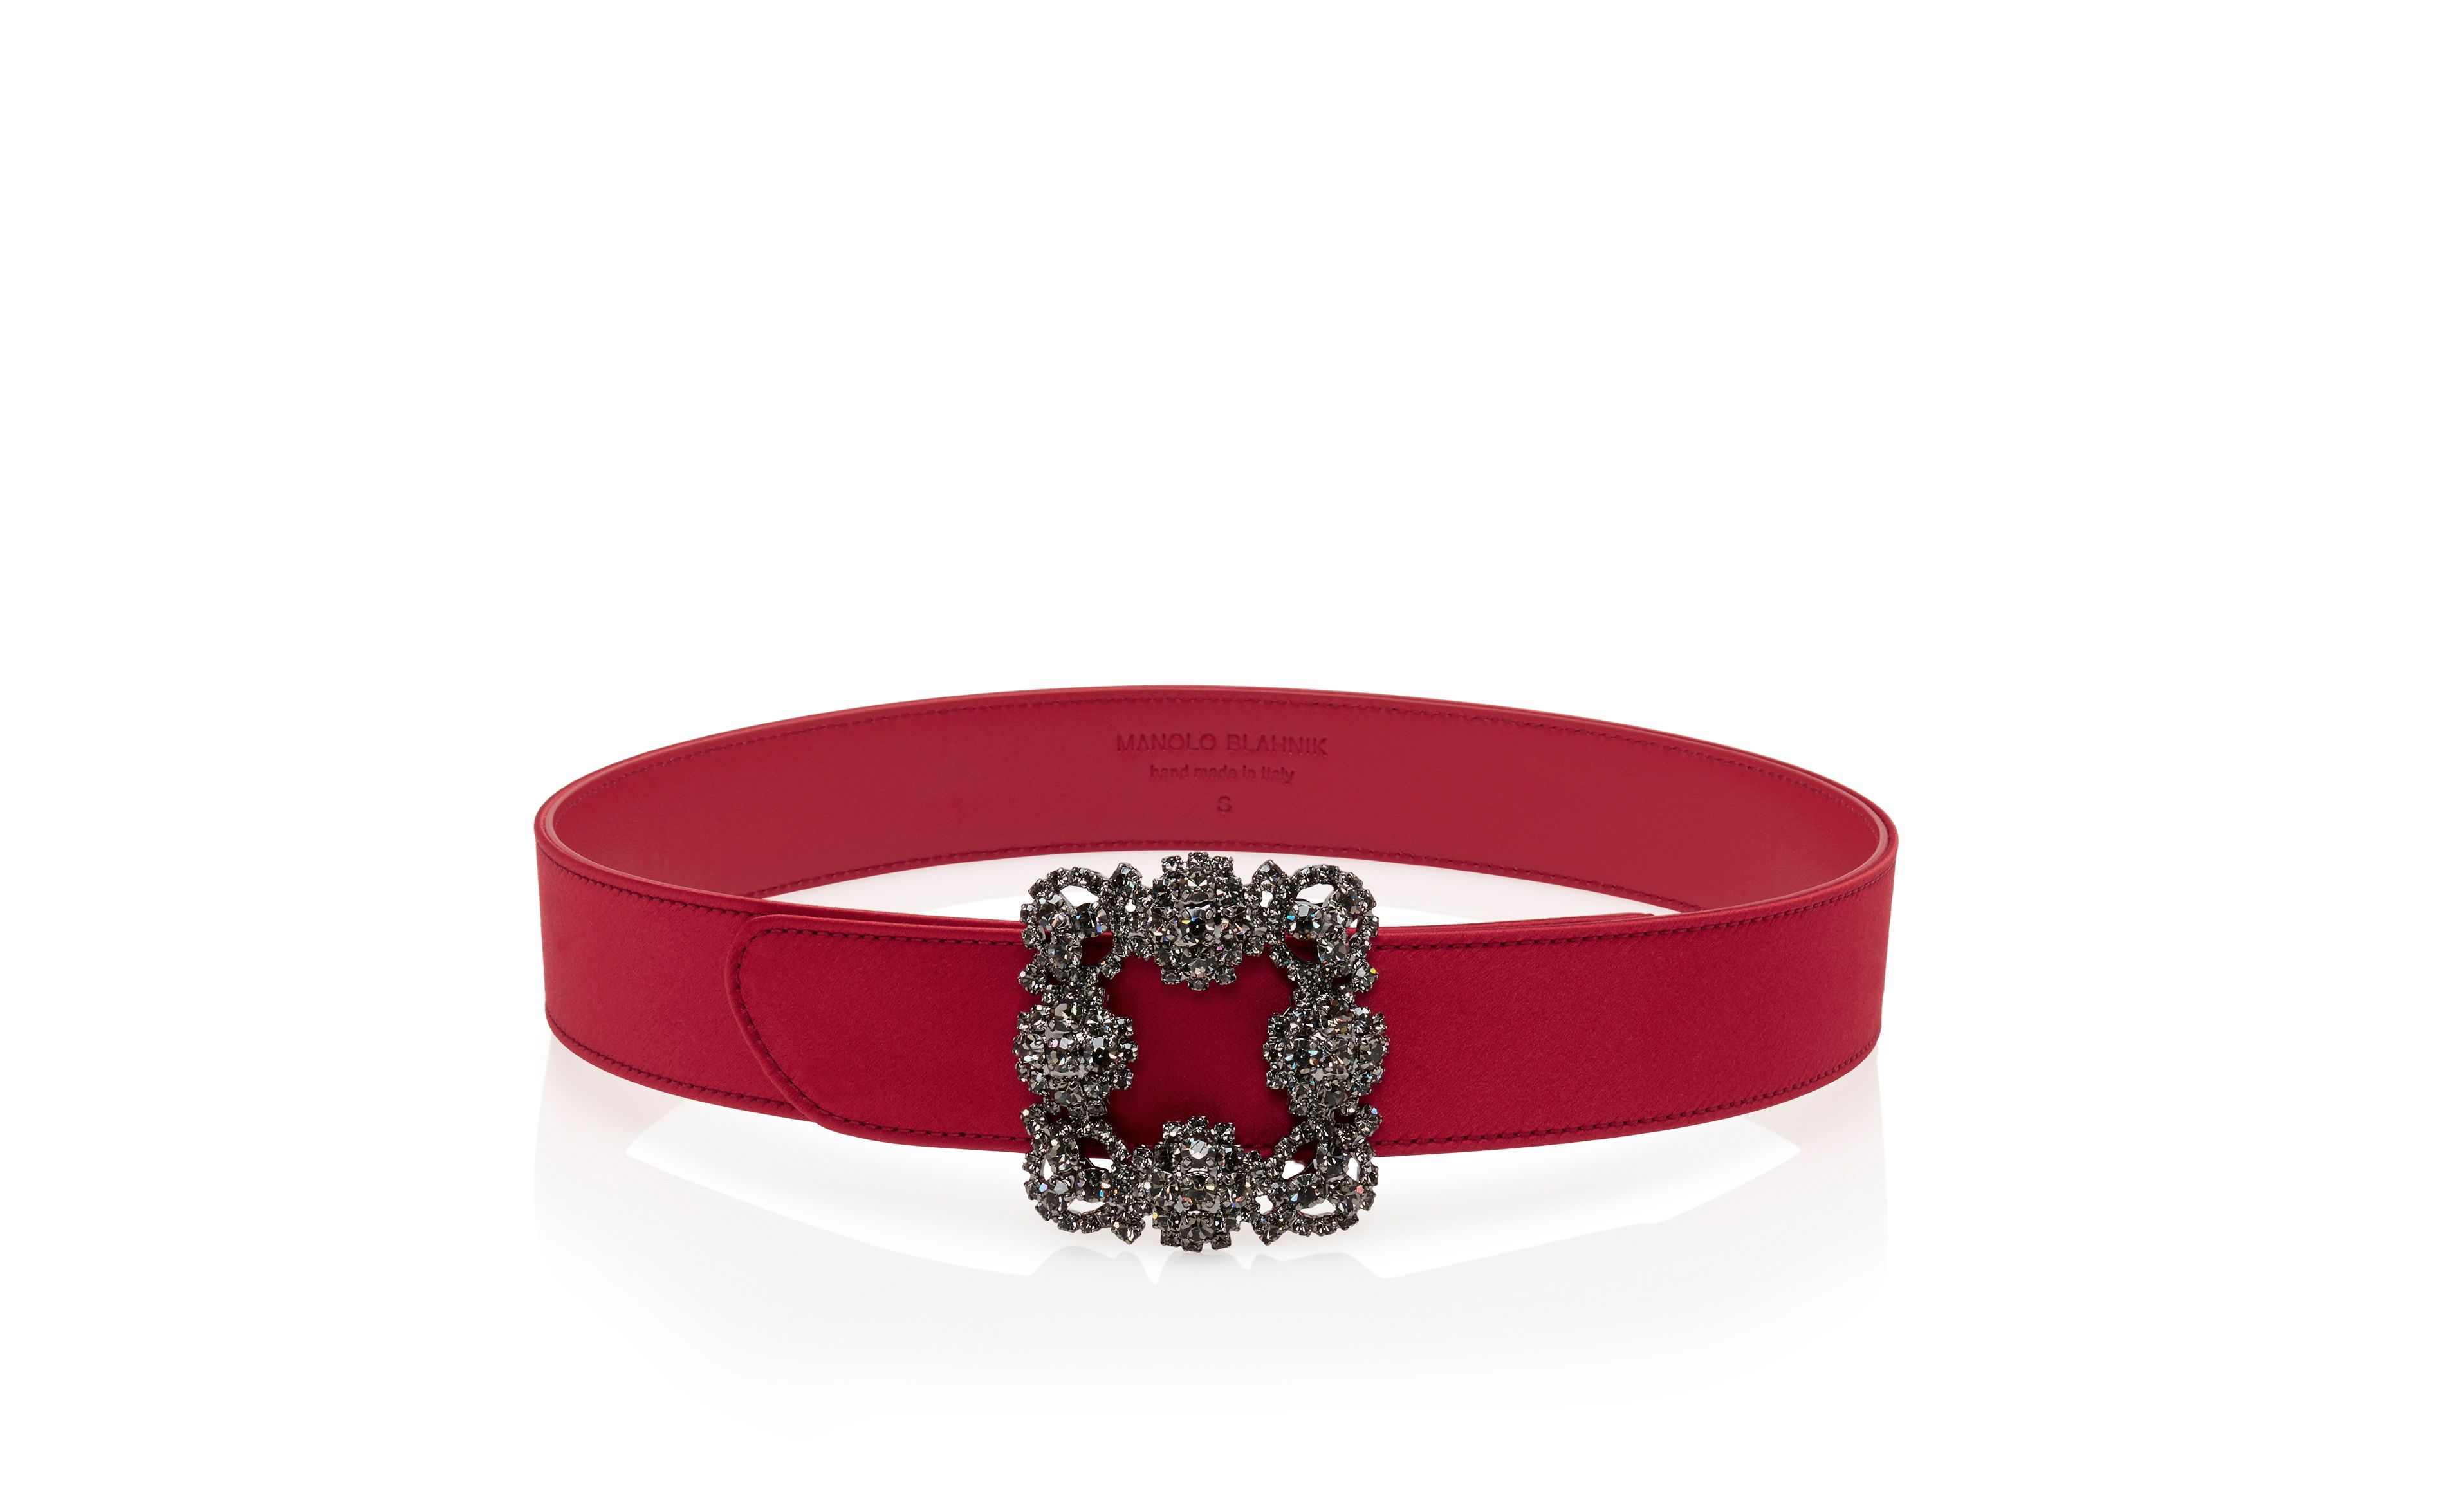 Designer Red Satin Crystal Buckled Belt - Image Upsell